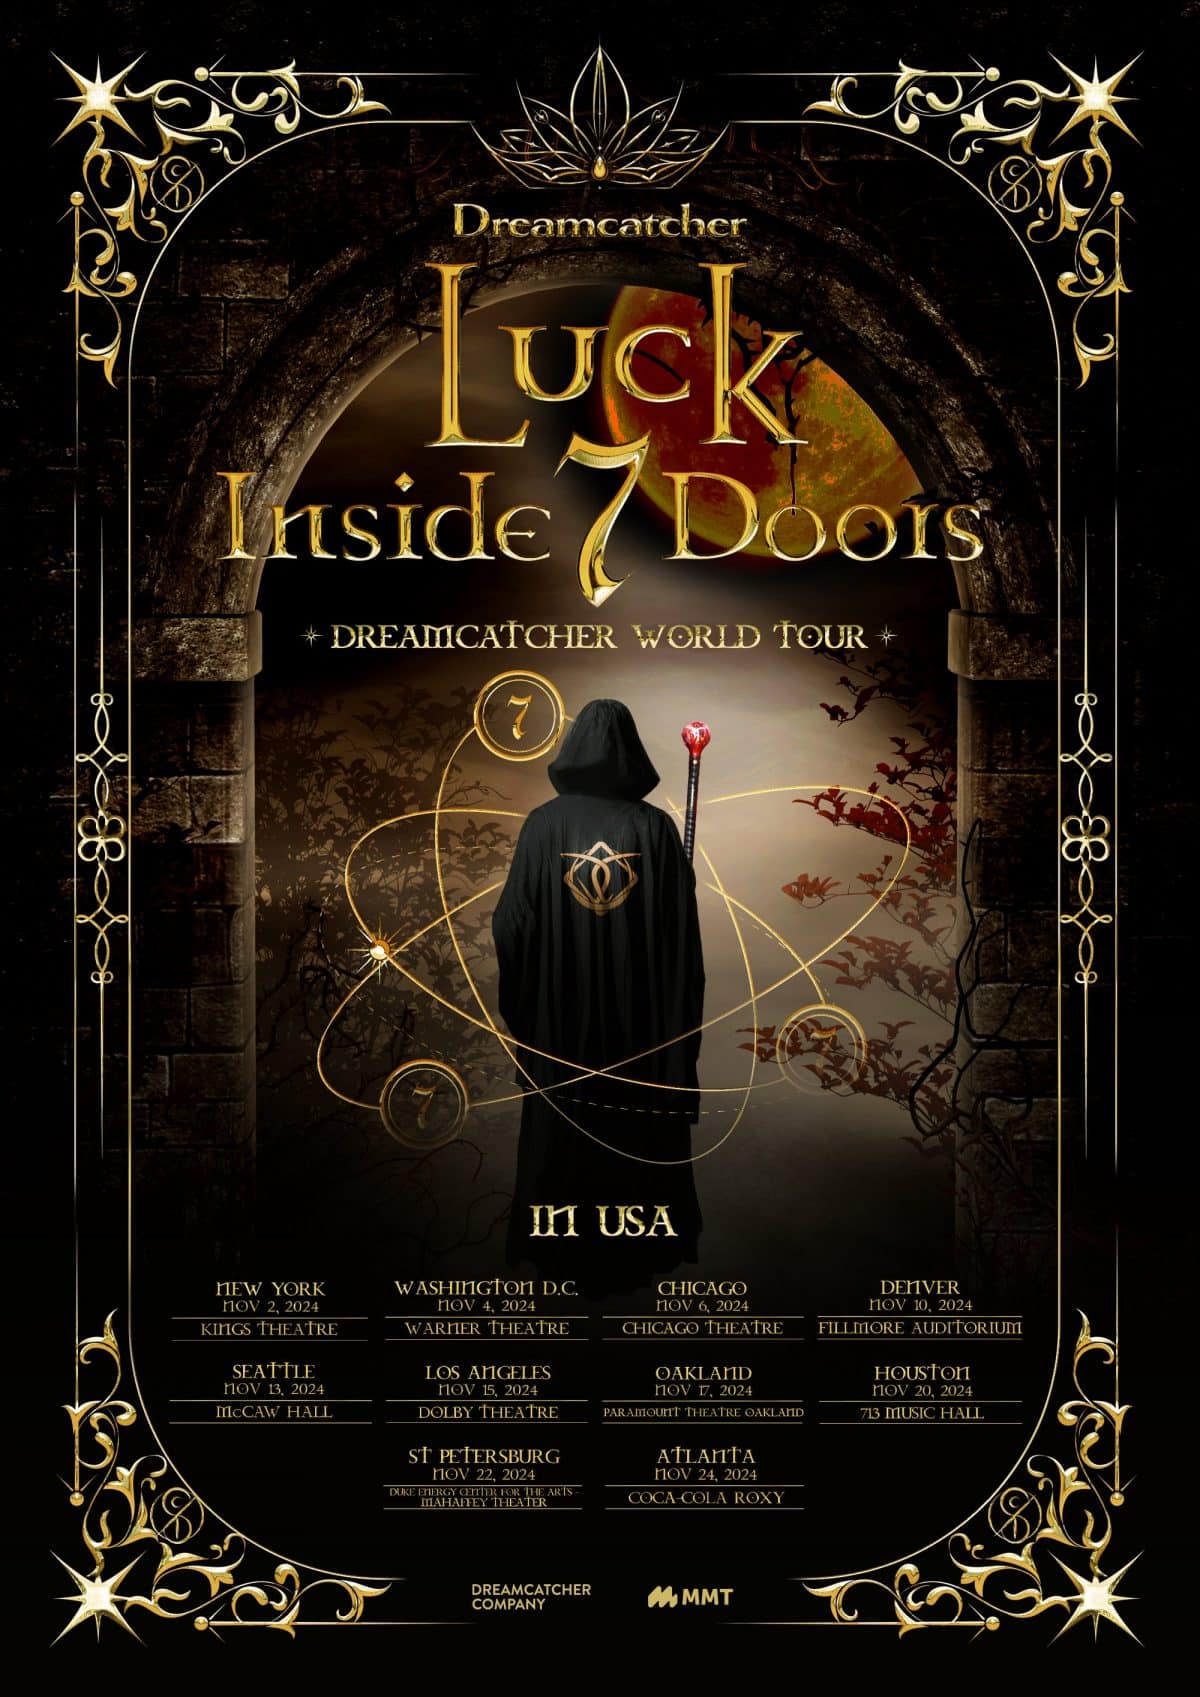 Dreamcatcher объявили даты и остановки в США в рамках тура «Luck Inside 7 Doors»